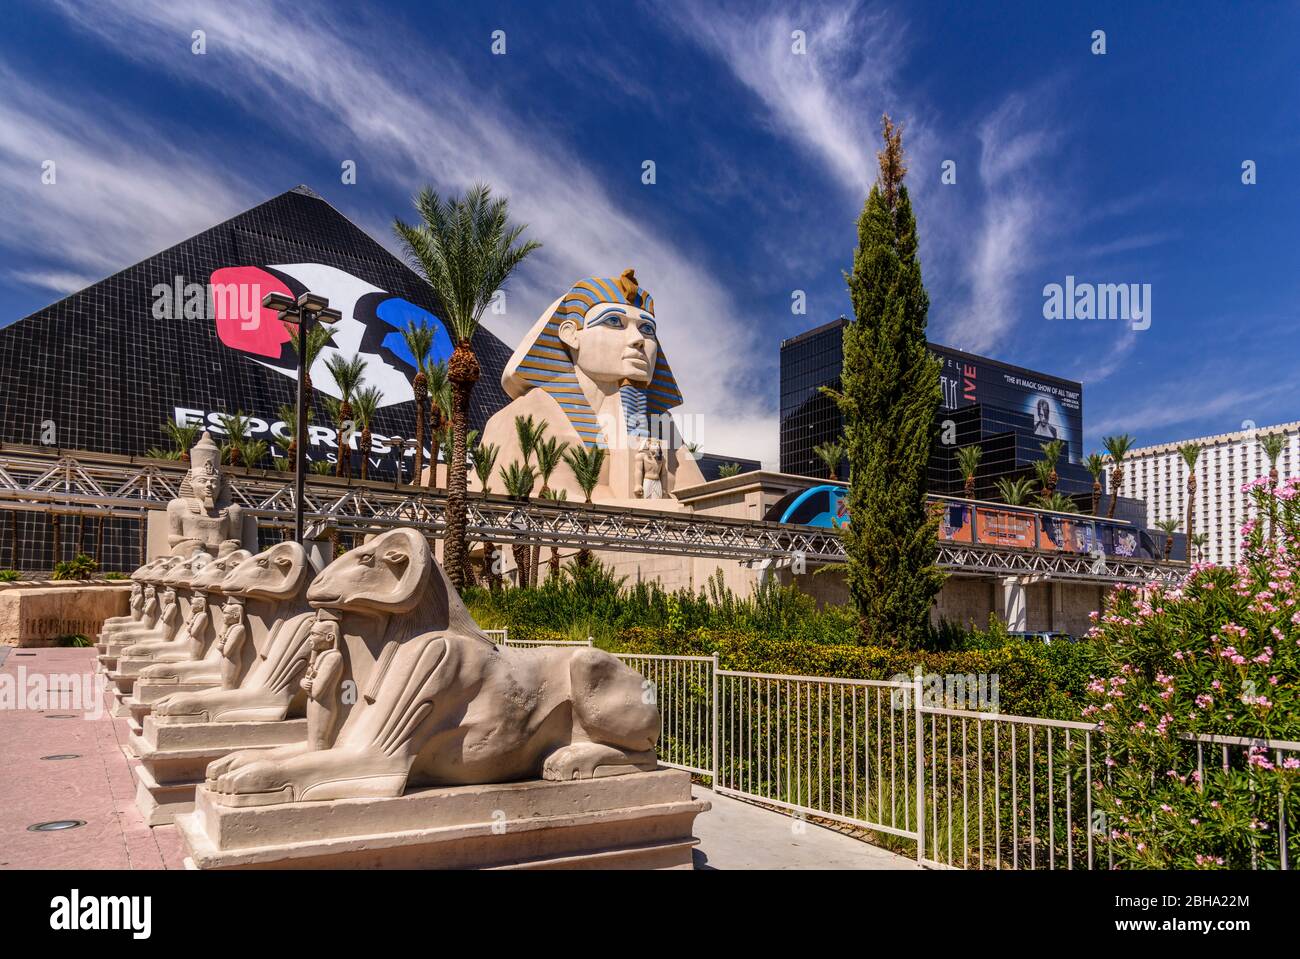 Estados Unidos, Nevada, Condado de Clark, las Vegas, las Vegas Boulevard, The Strip, Luxor Hotel and Casino, Pyramide mit Sphinx Foto de stock